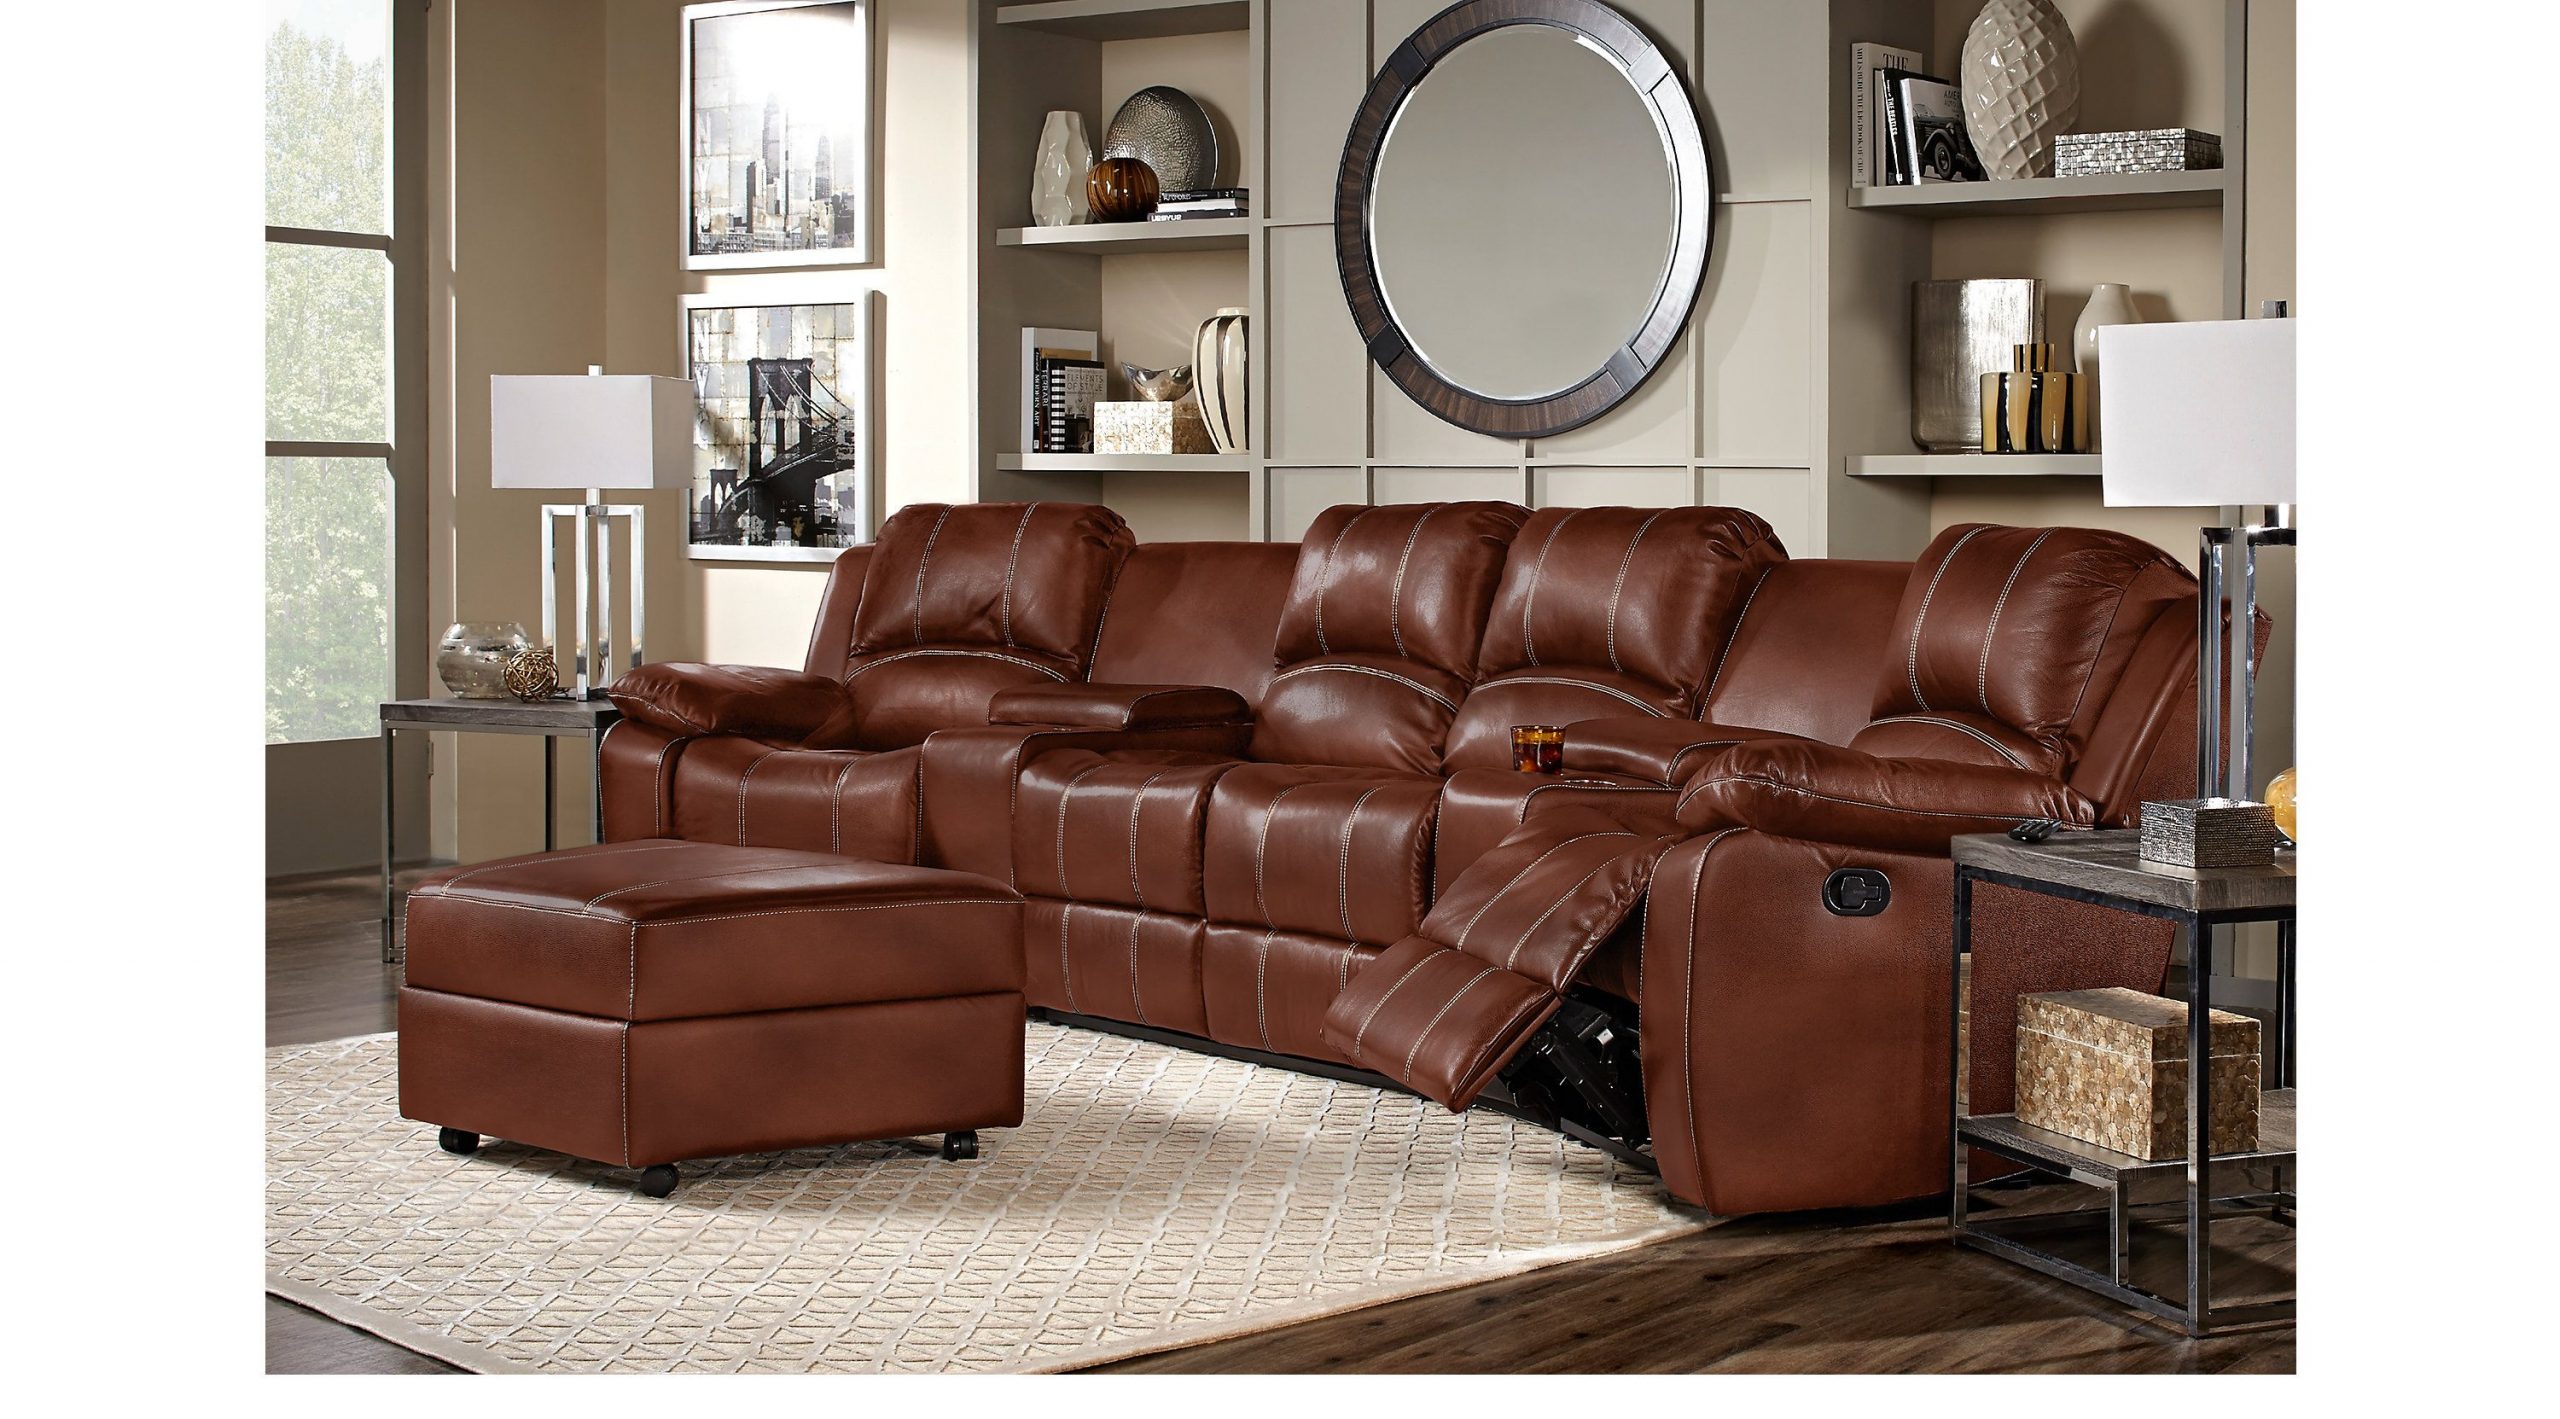 Best Leather Living Room Set Under 3000